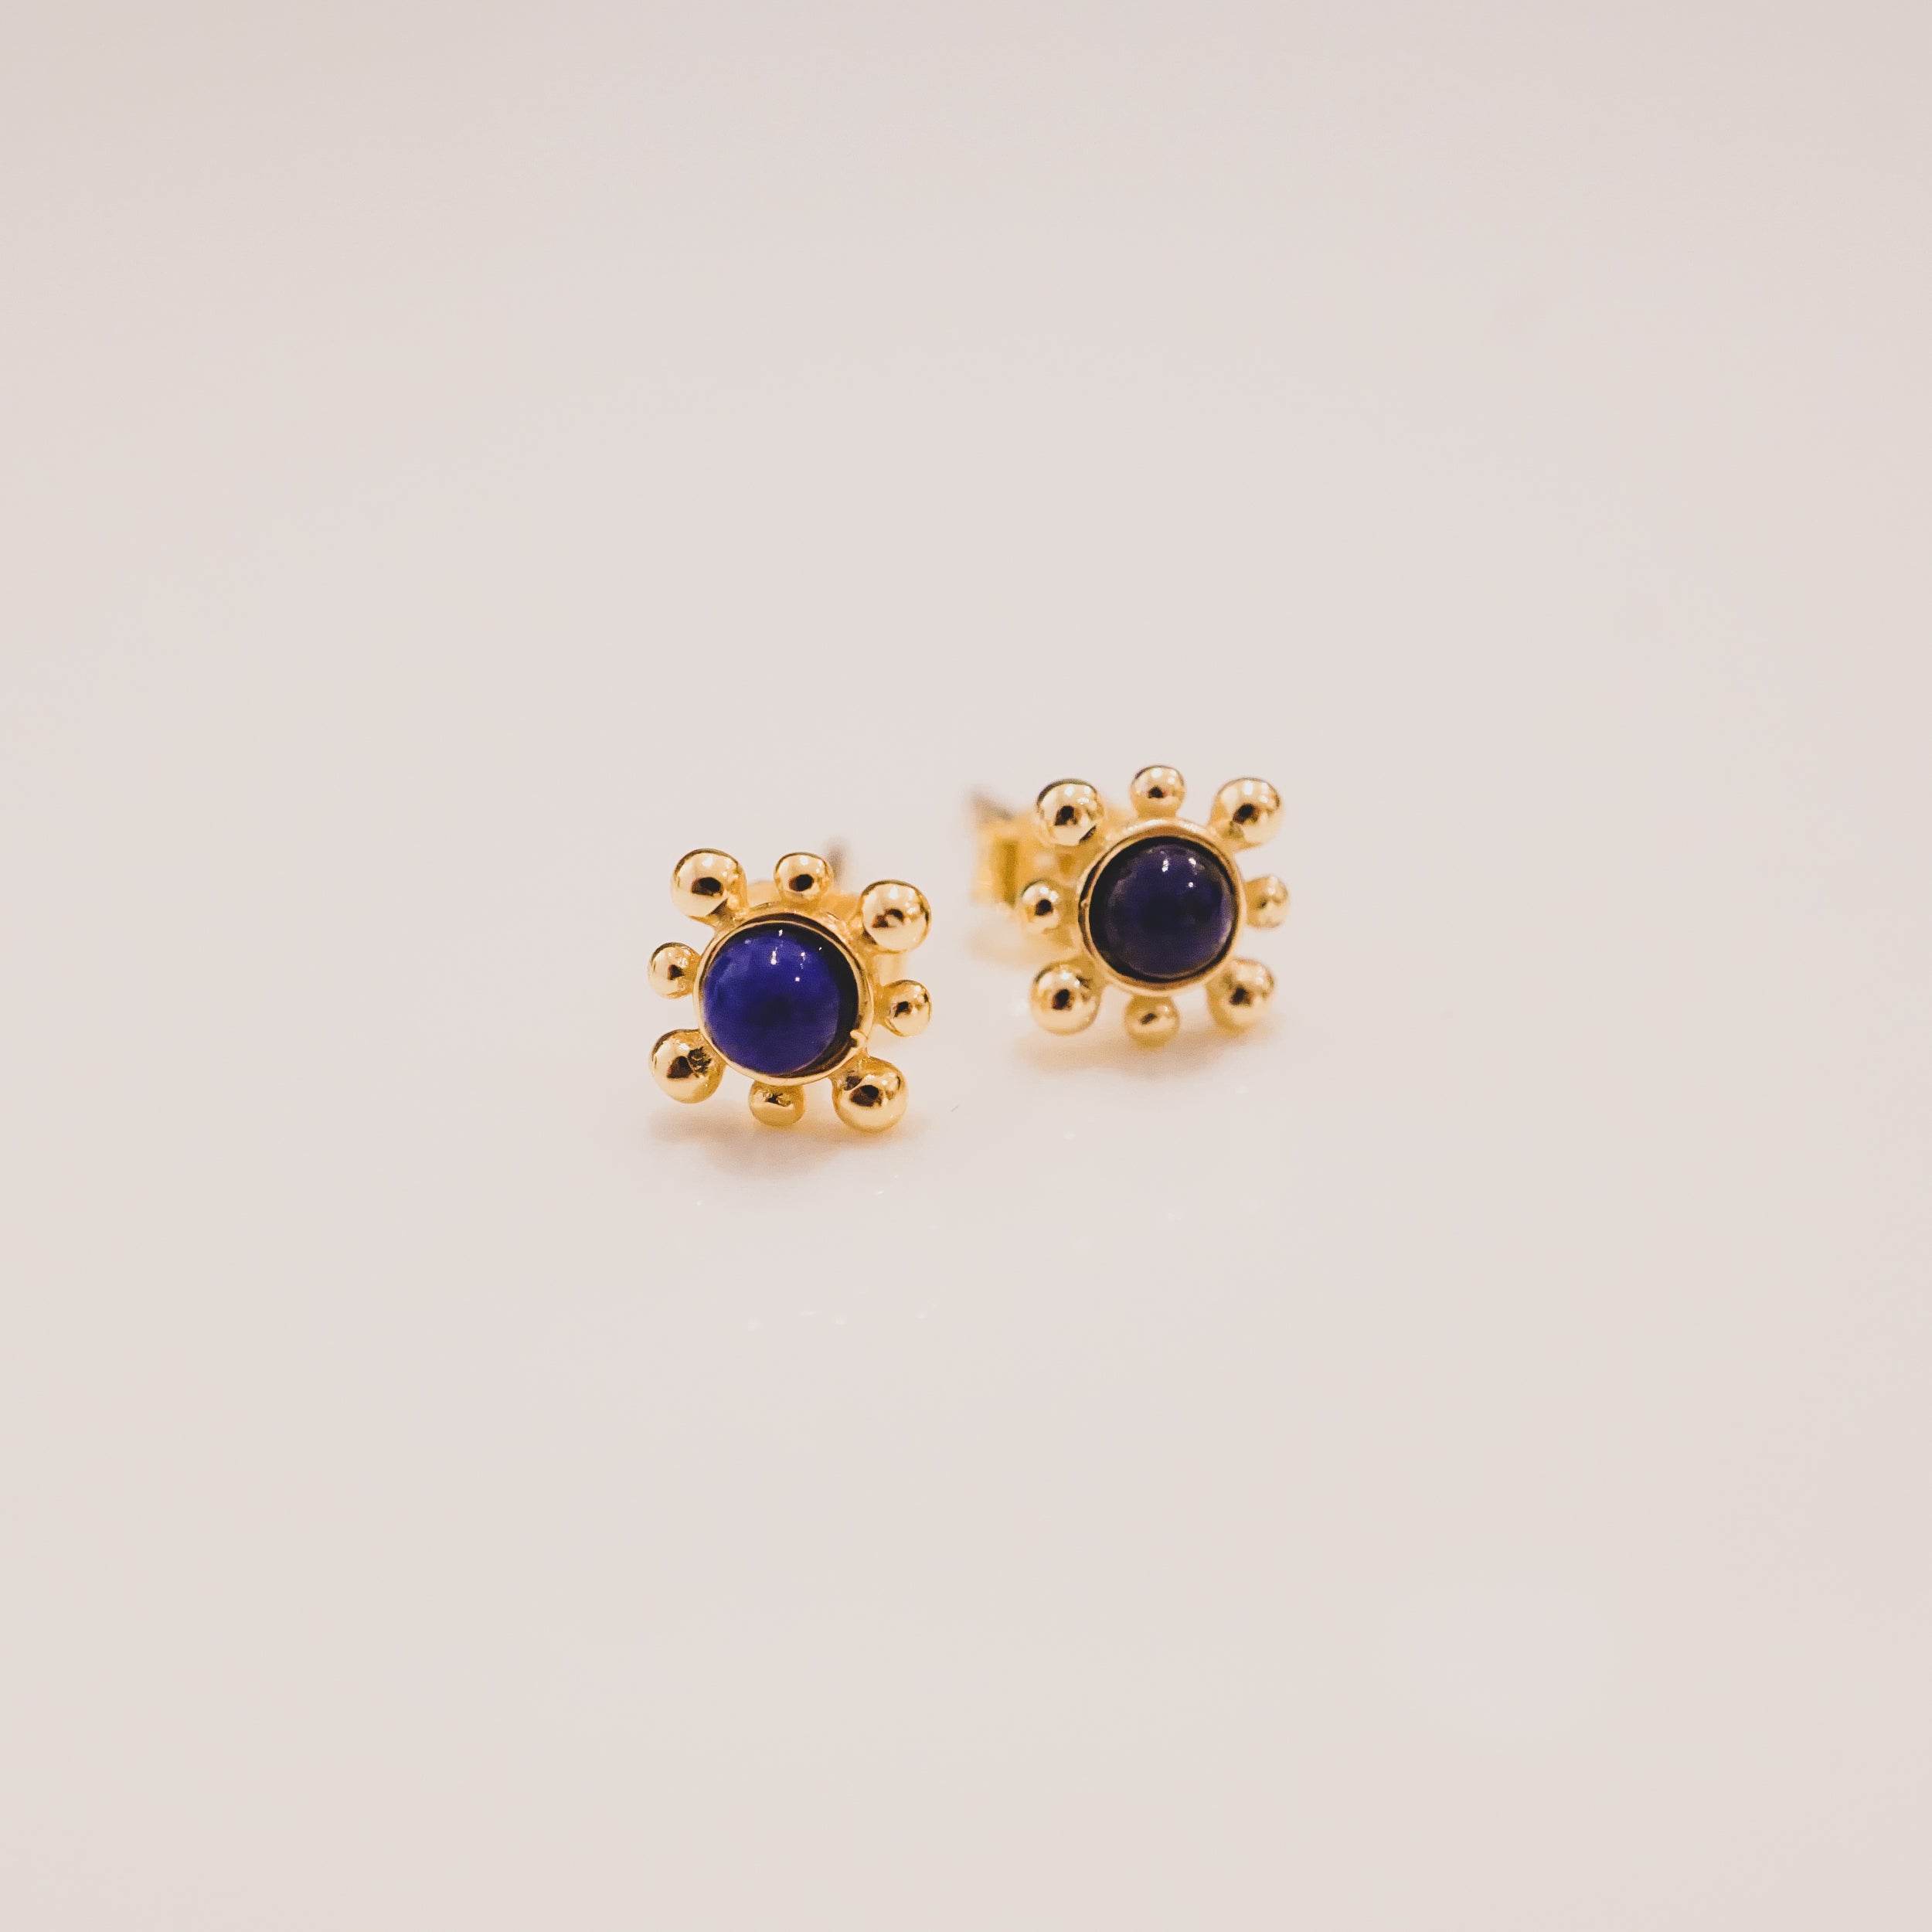 Lapis Lazuli Elizabeth Locke Stud Earrings